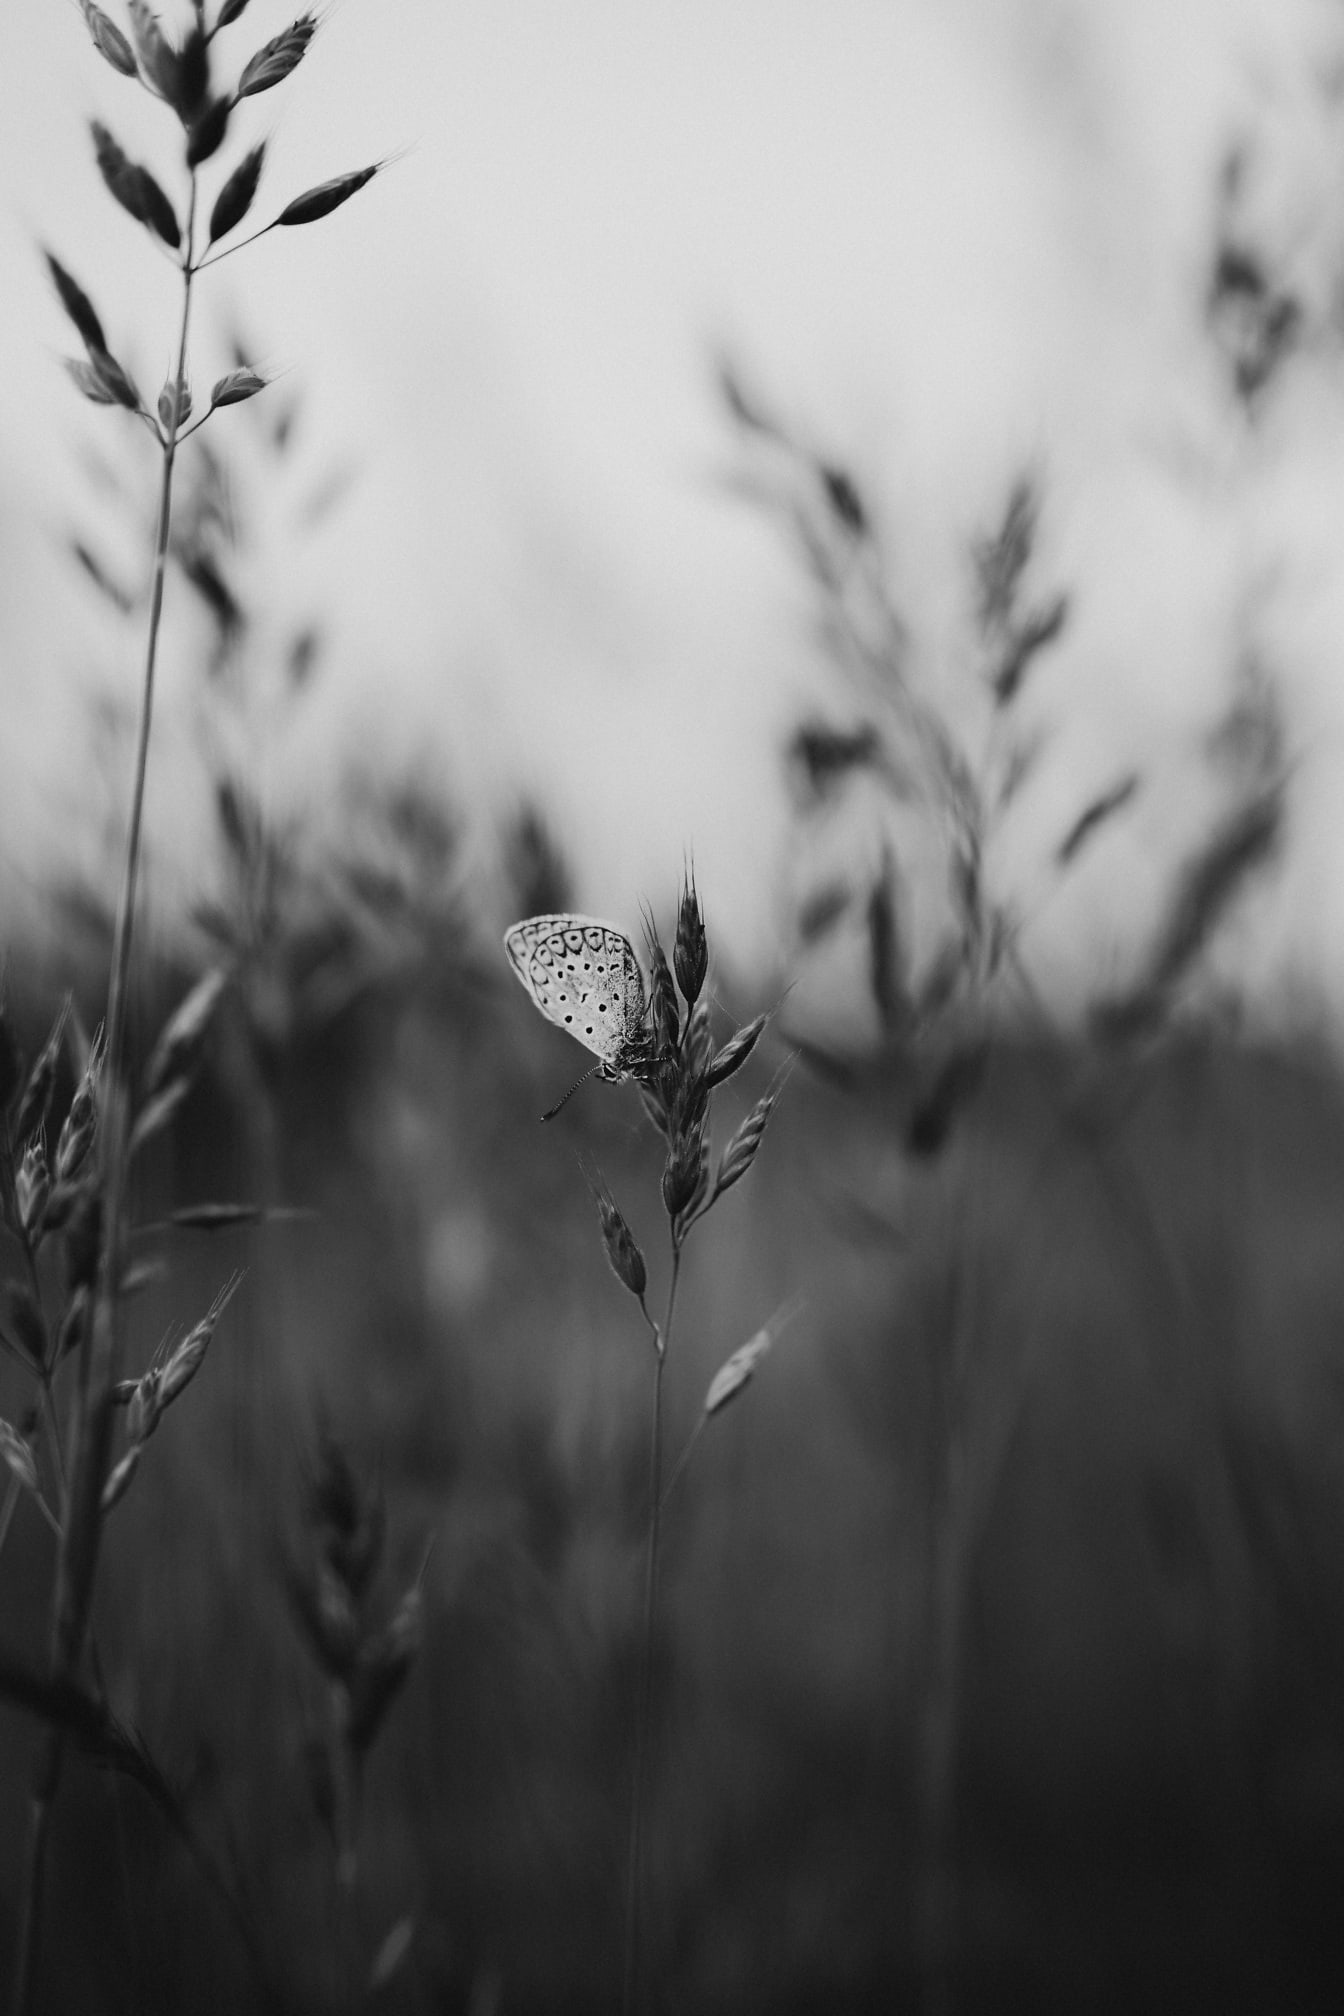 Con bướm nhỏ màu trắng trên thân cỏ chụp ảnh đơn sắc